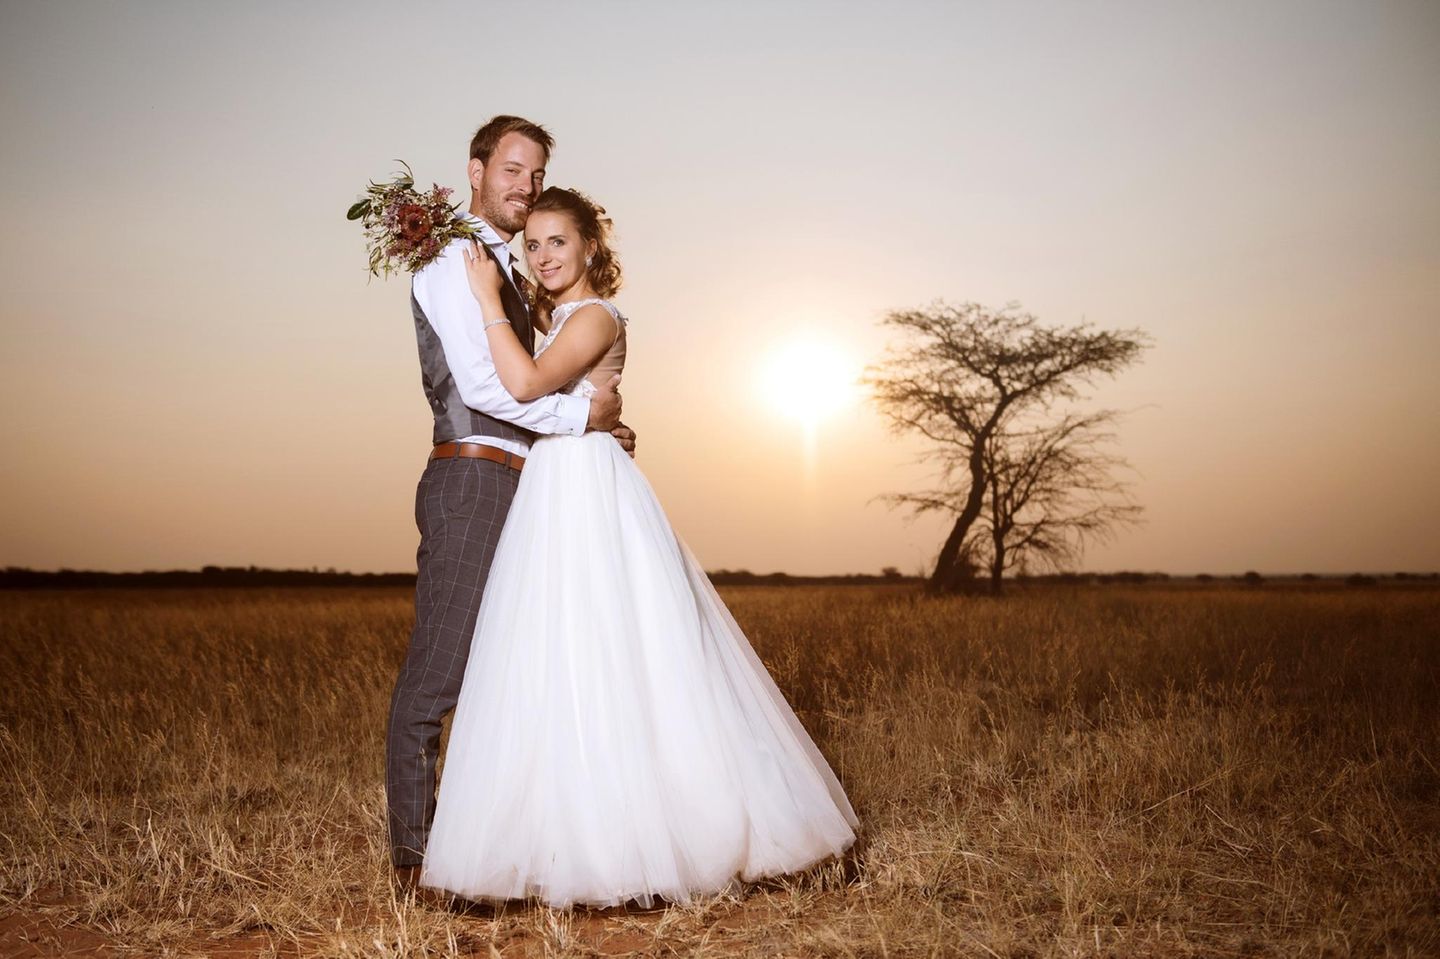 Das "Bauer sucht Frau"-Traumpaar Gerald und Anna haben geheiratet. Auf der Farm von Gerald in Namibia feierte das frisch vermählte Paar gemeinsam mit Geralds Freunden und seiner Verwandtschaft ein großes Fest.